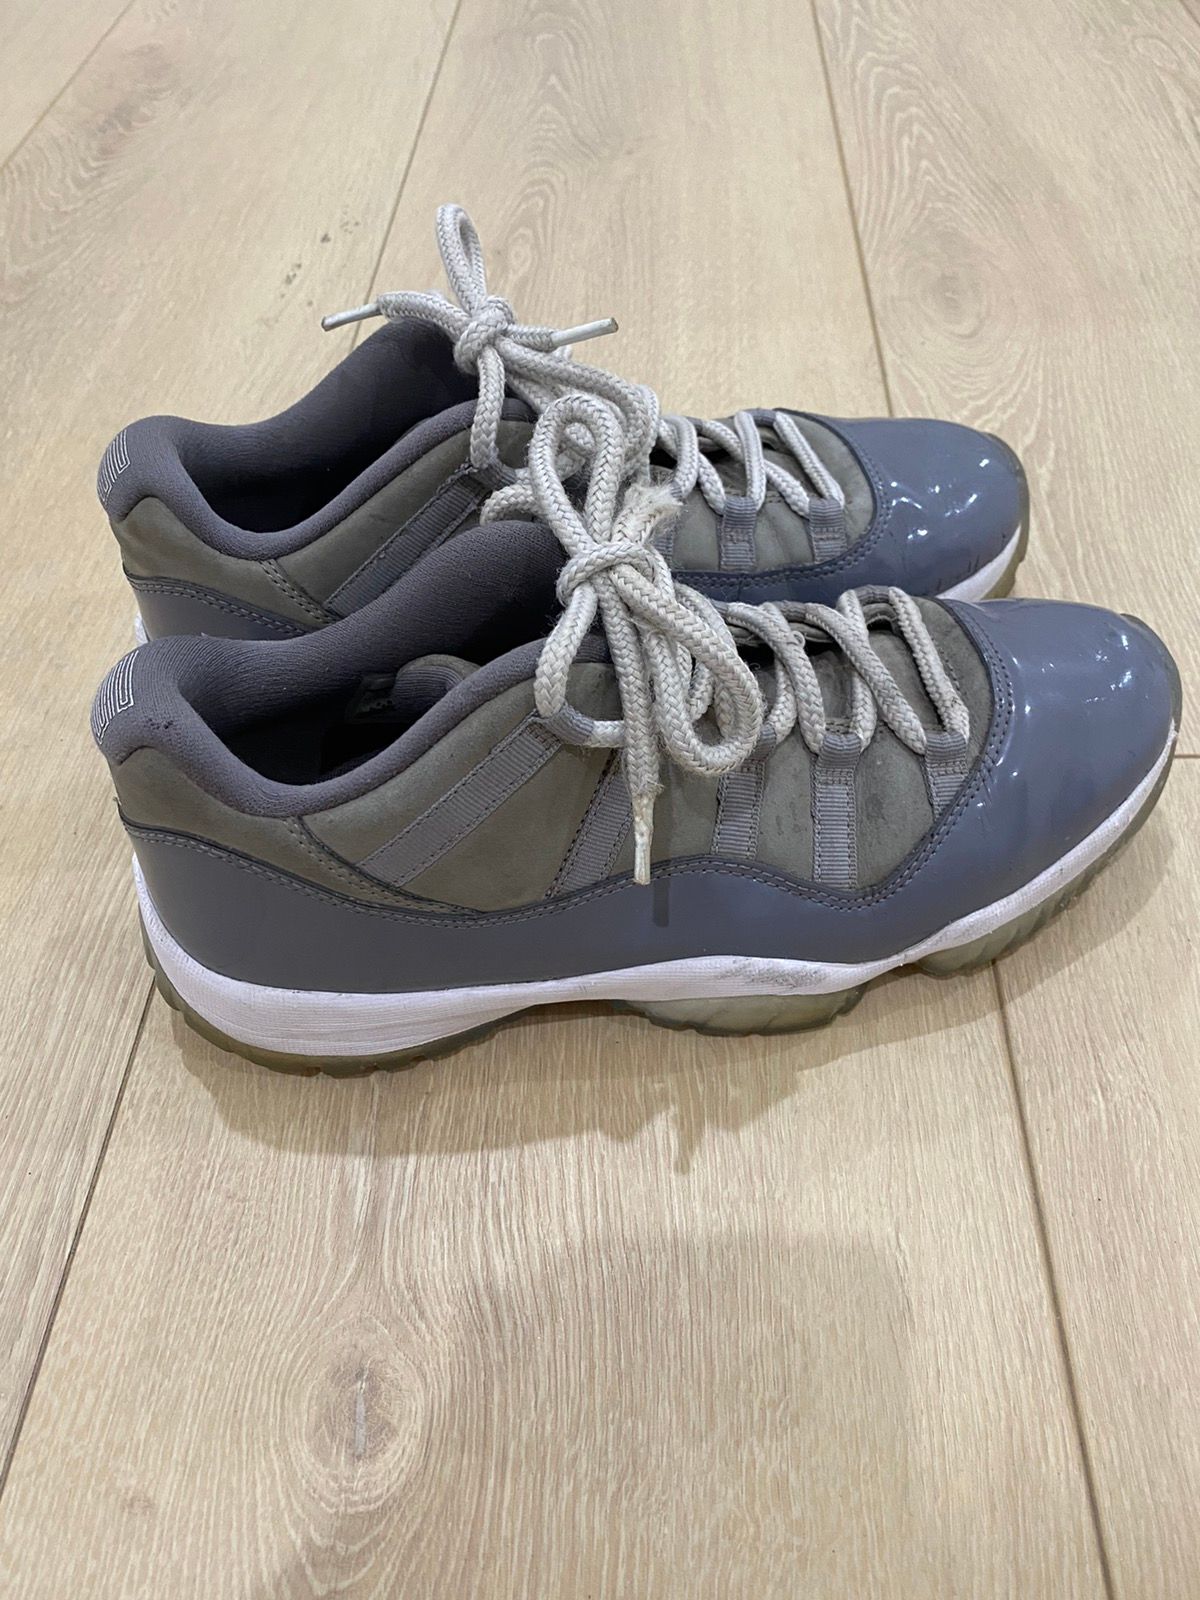 Pre-owned Jordan Nike 2018 Nike Air Jordan 11 Xi Low Retro "cool Grey" Size 9.5 Shoes